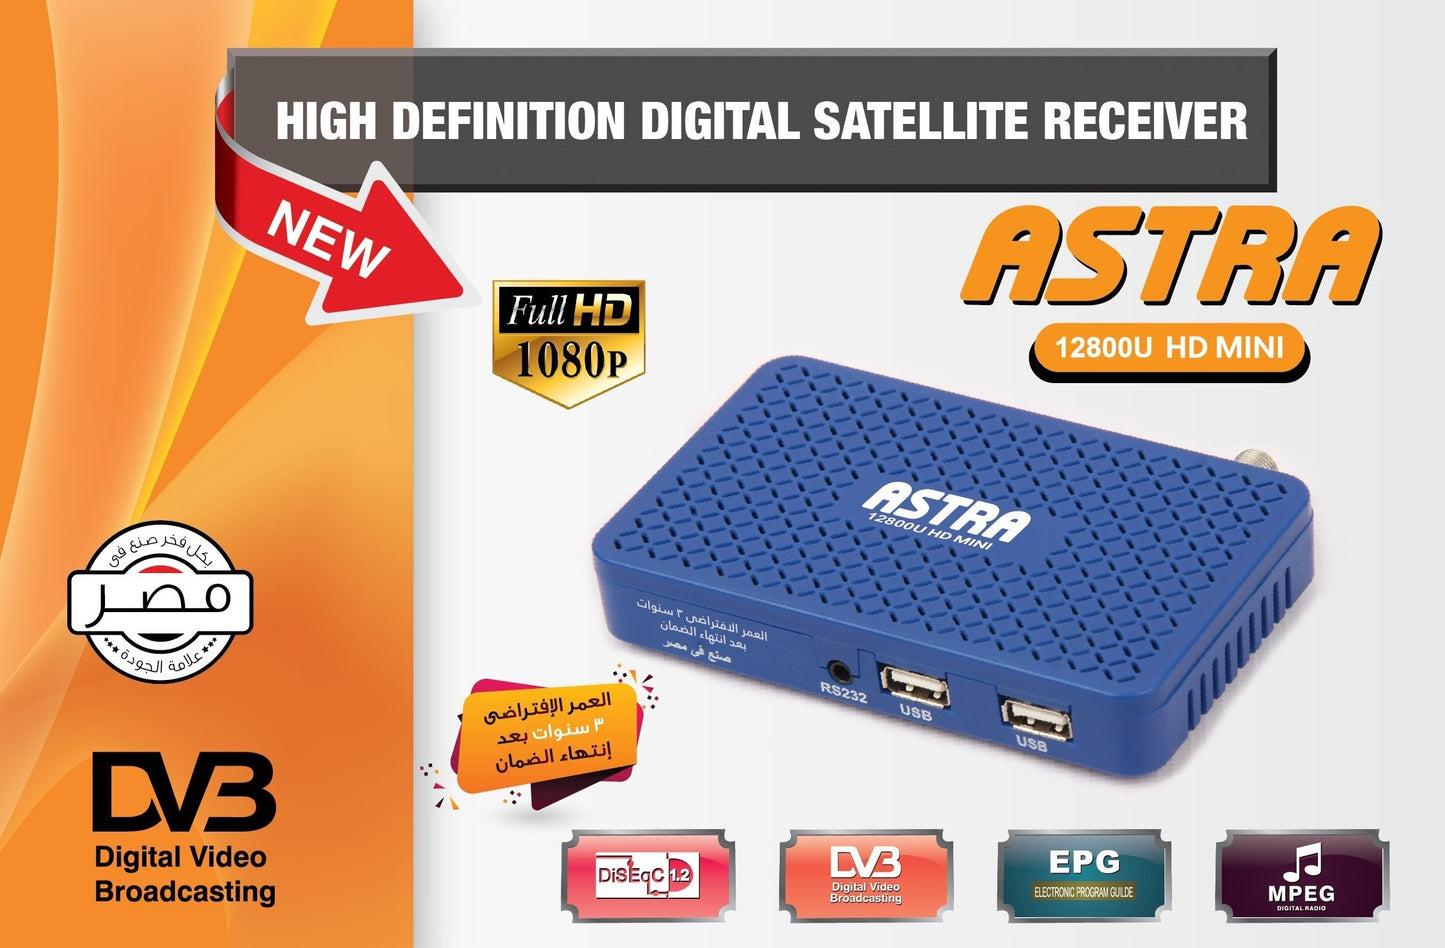 ASTRA, 12800U HD Mini, Receiver